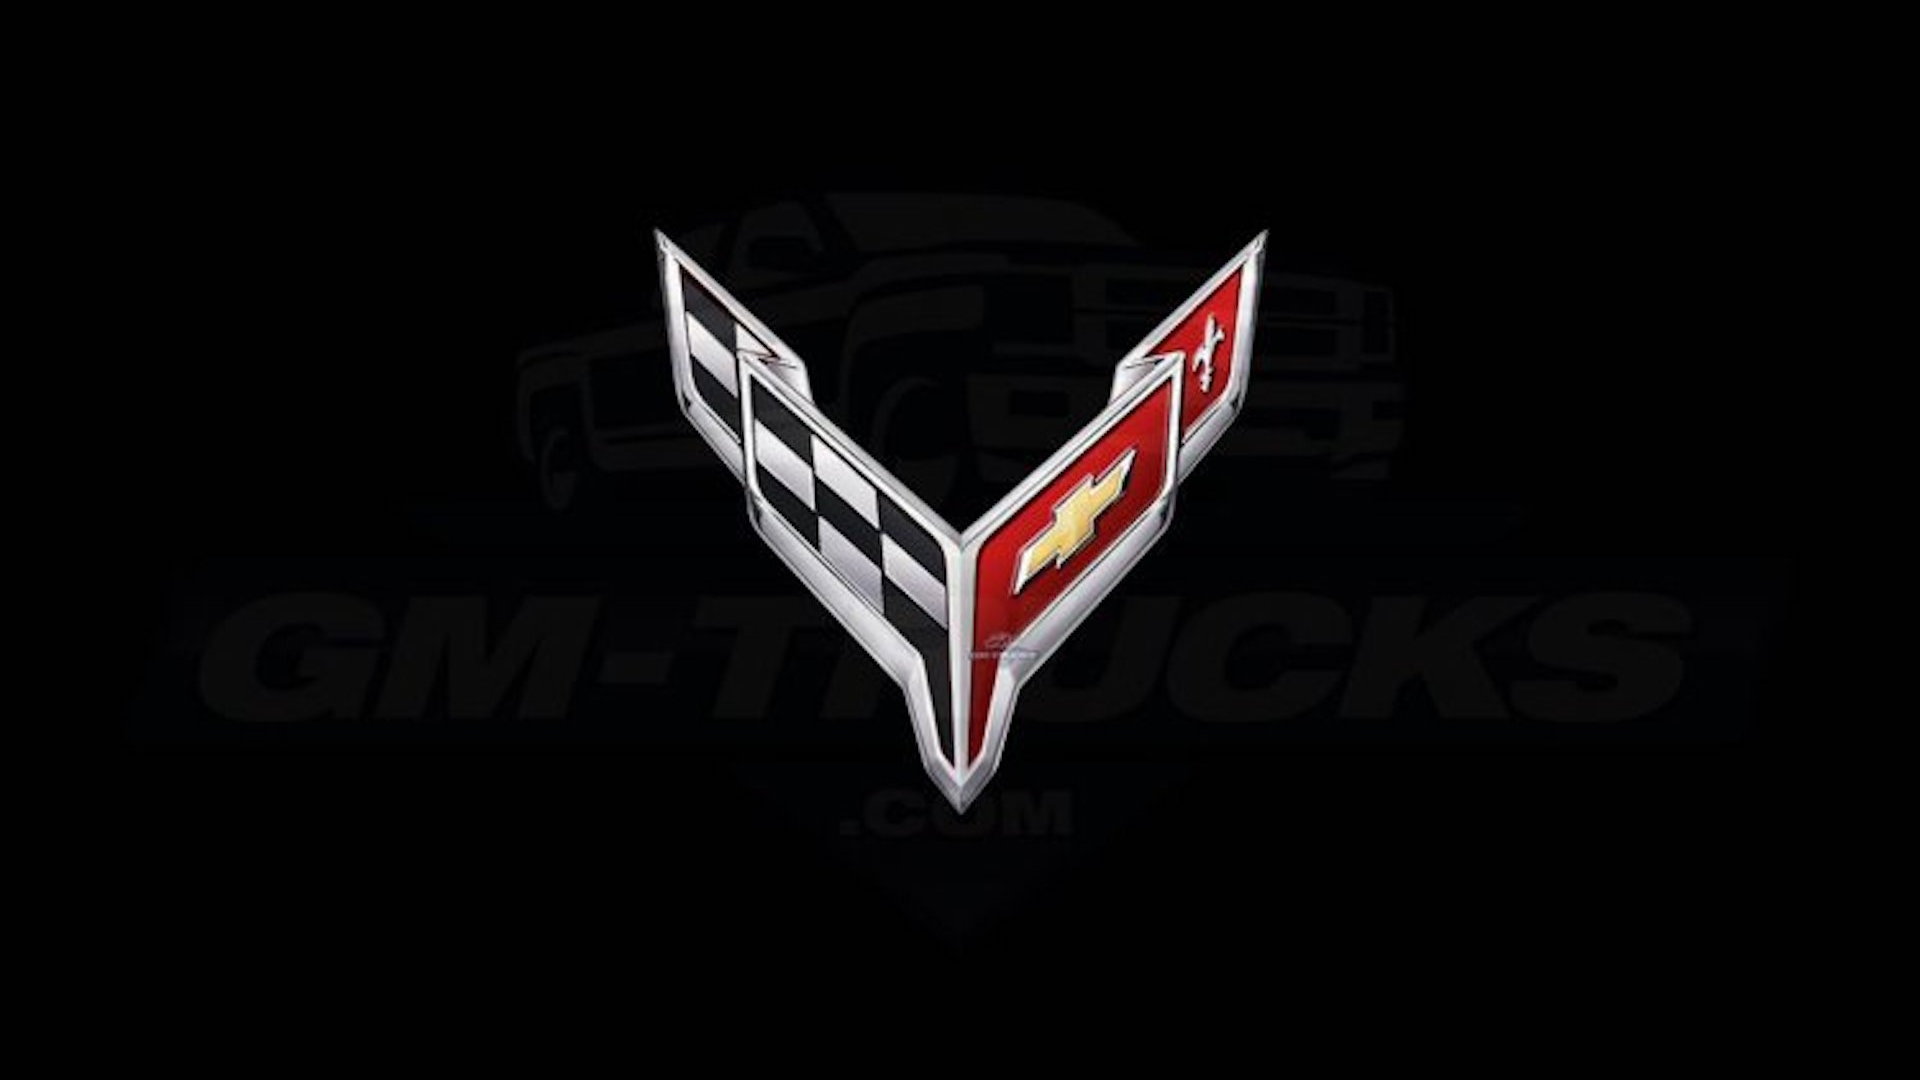 2020 Chevrolet C8 Corvette logos via GM-Trucks.com